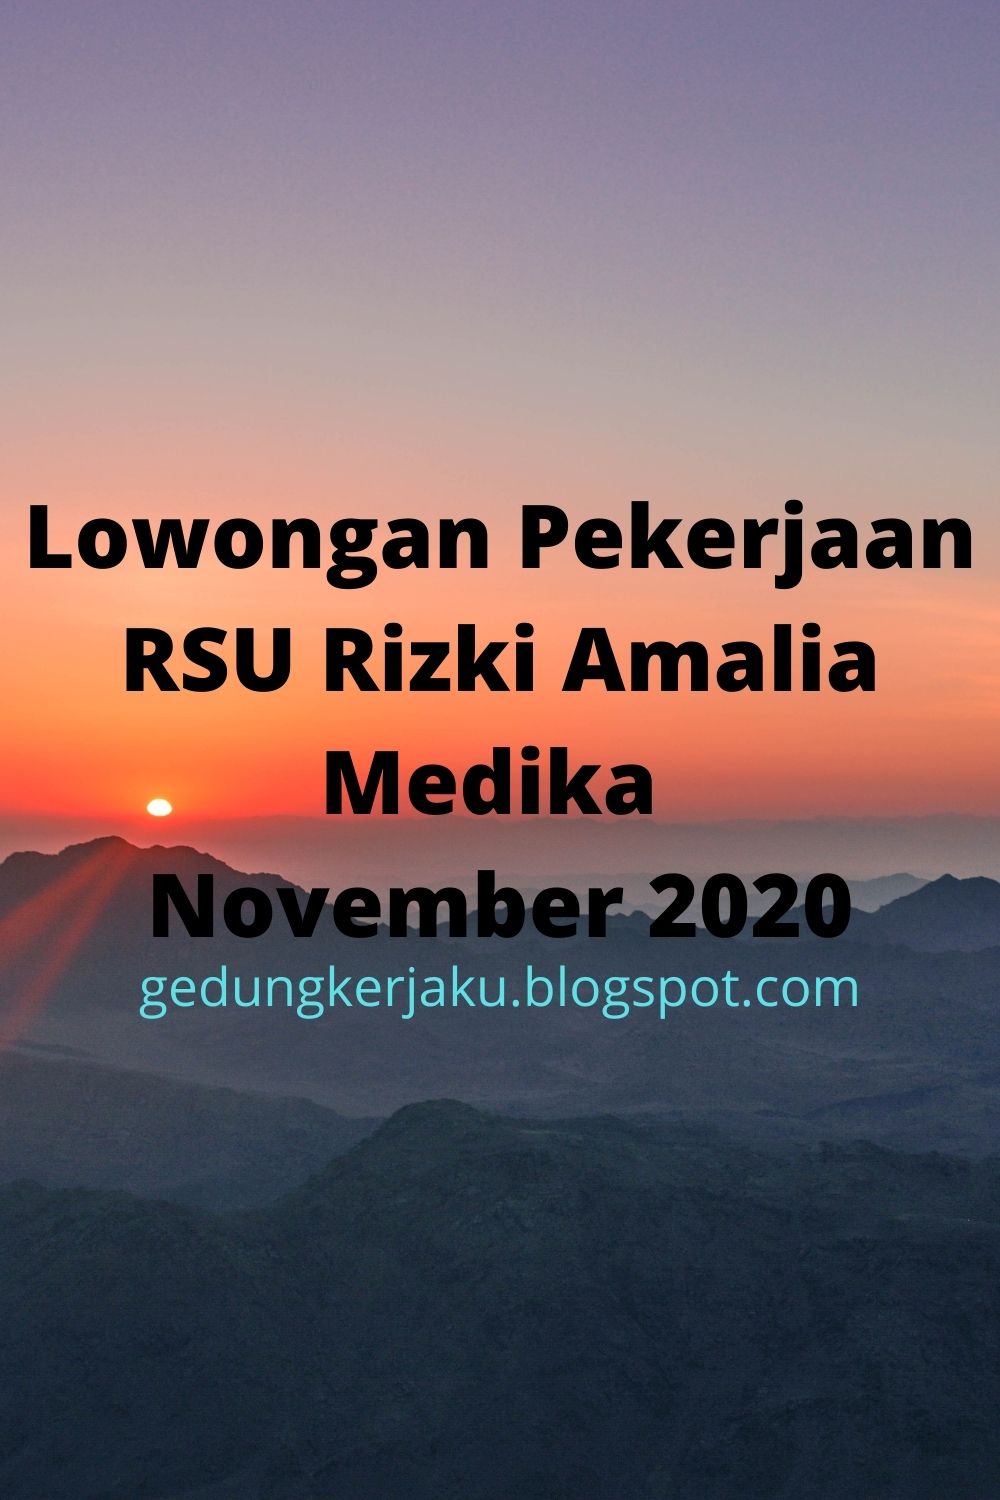 Lowongan Pekerjaan RSU Rizki Amalia Medika November 2020